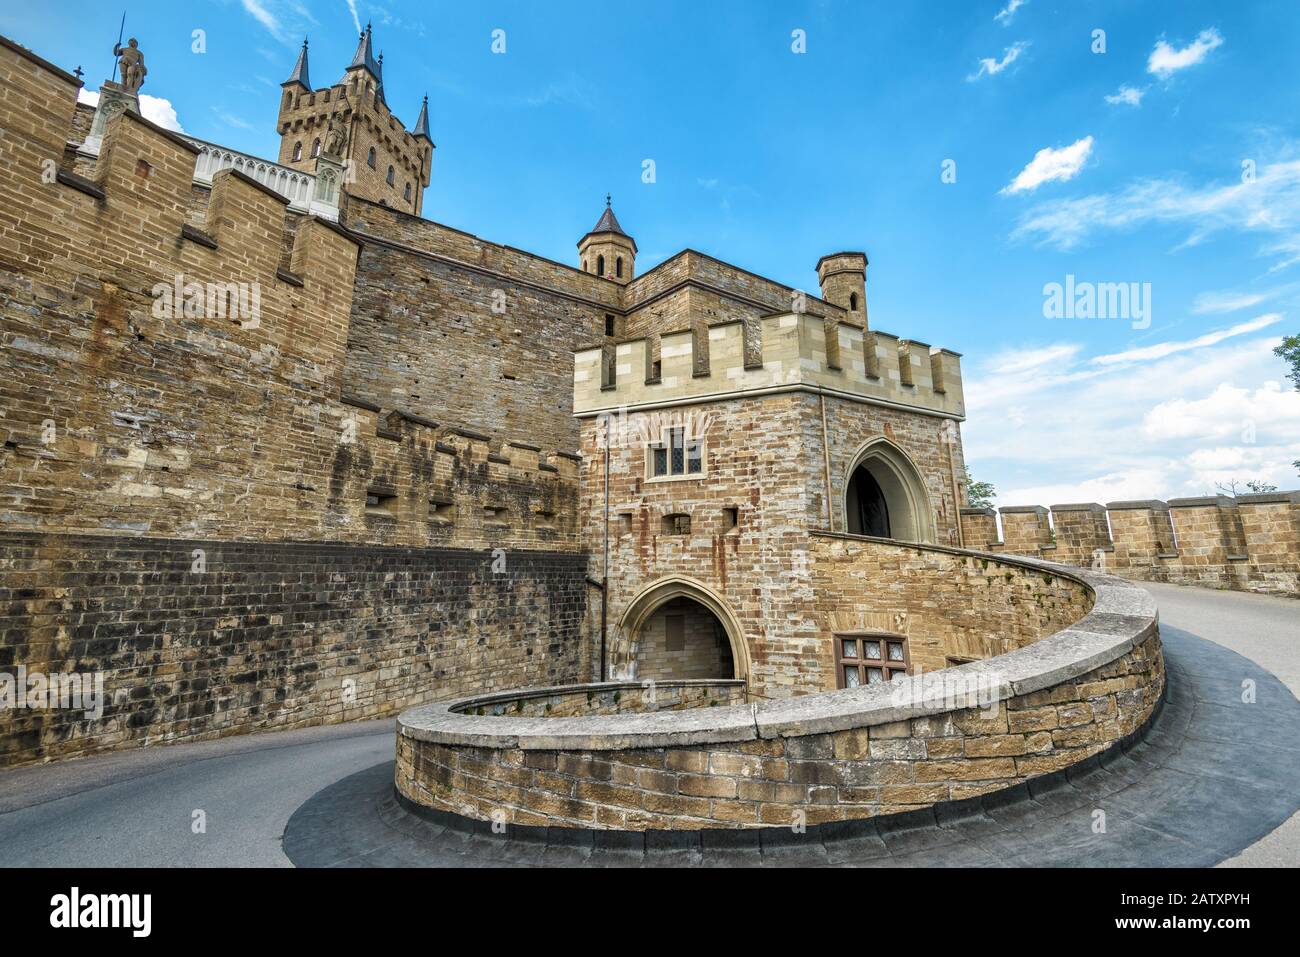 Castello Hohenzollern primo piano, Germania. Questo castello è un punto di riferimento nelle vicinanze di Stoccarda. Ingresso a spirale al maestoso Burg Hohenzollern. Famoso gotico c Foto Stock